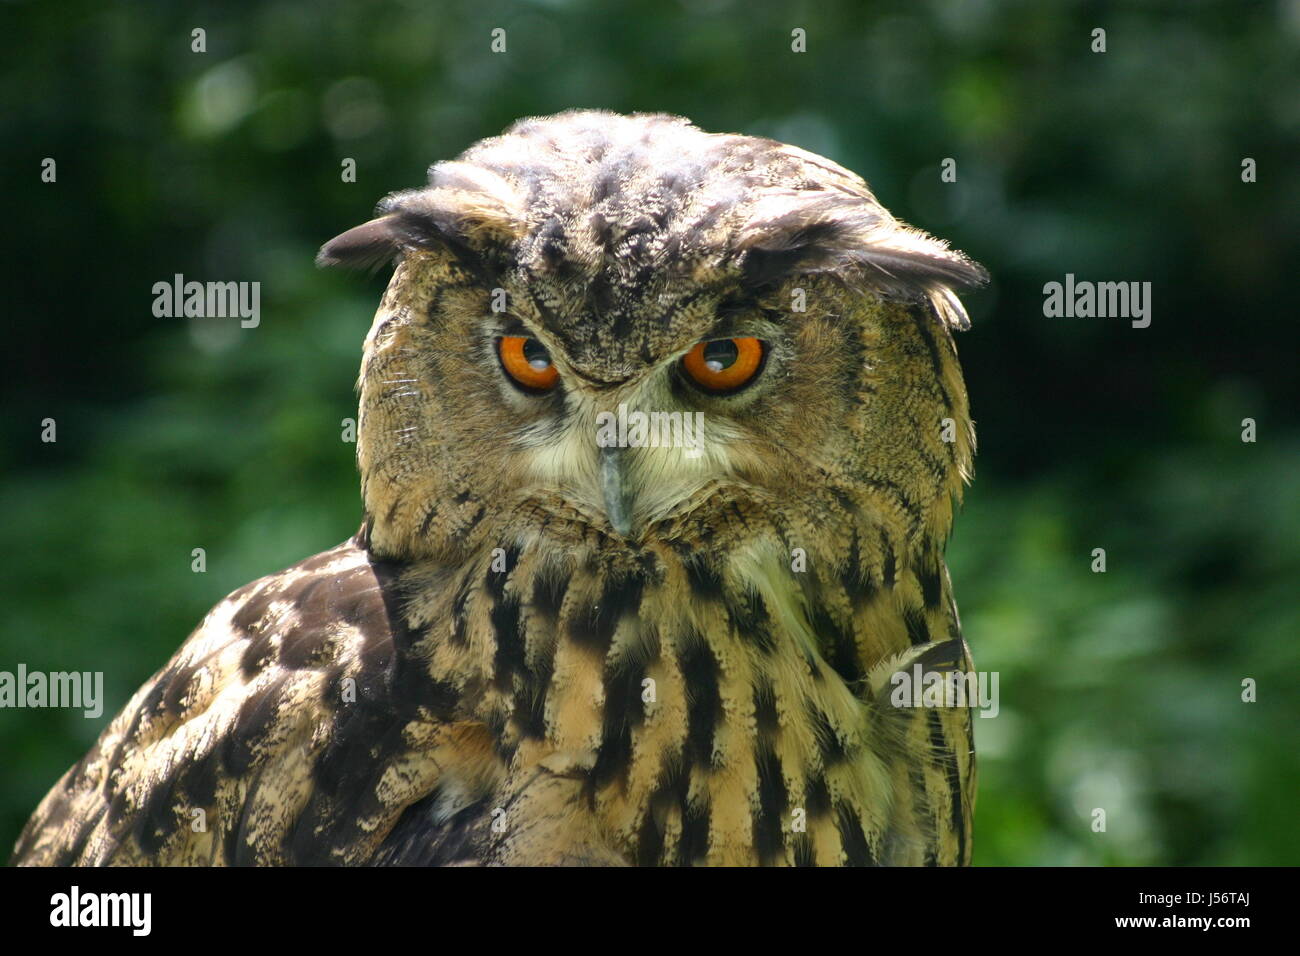 Uccelli Bird raptor piume owl il gufo reale nachtvogel eulengesicht vogelportrt Foto Stock